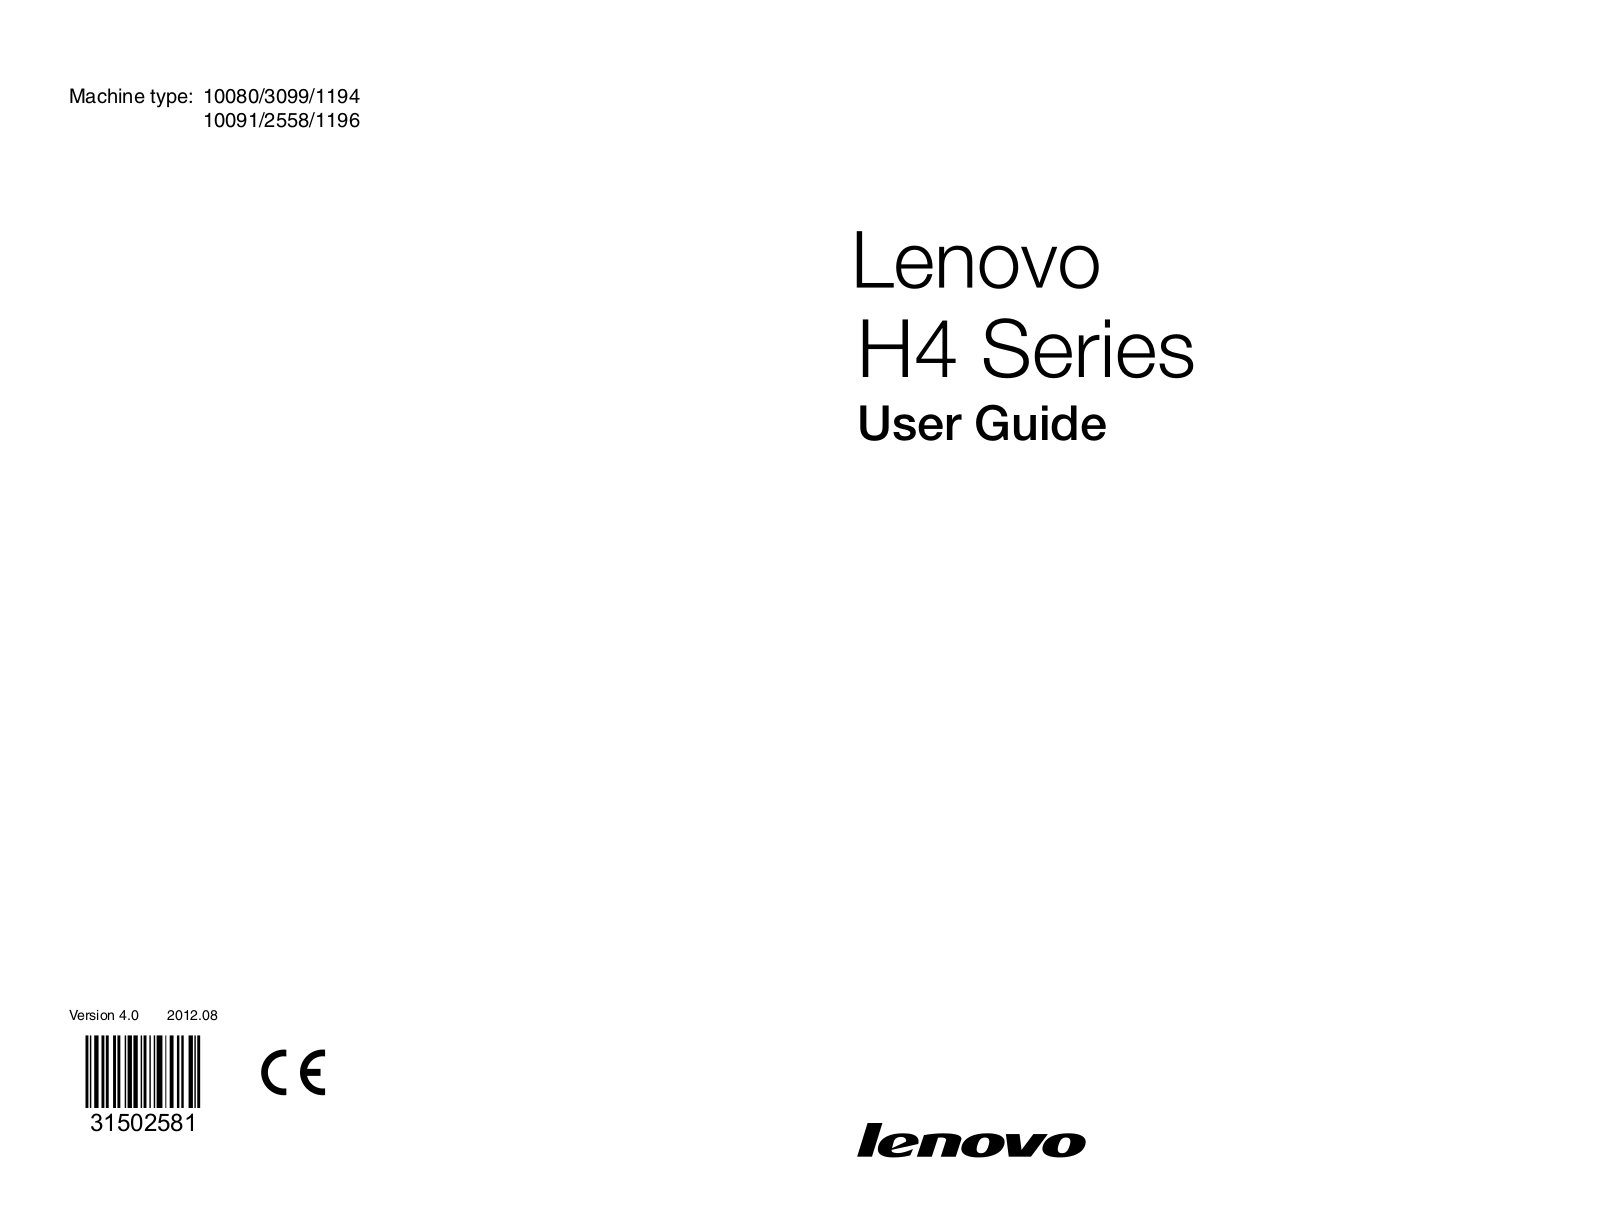 Lenovo 3099, 10091, 1194, H430, 10080 User Manual